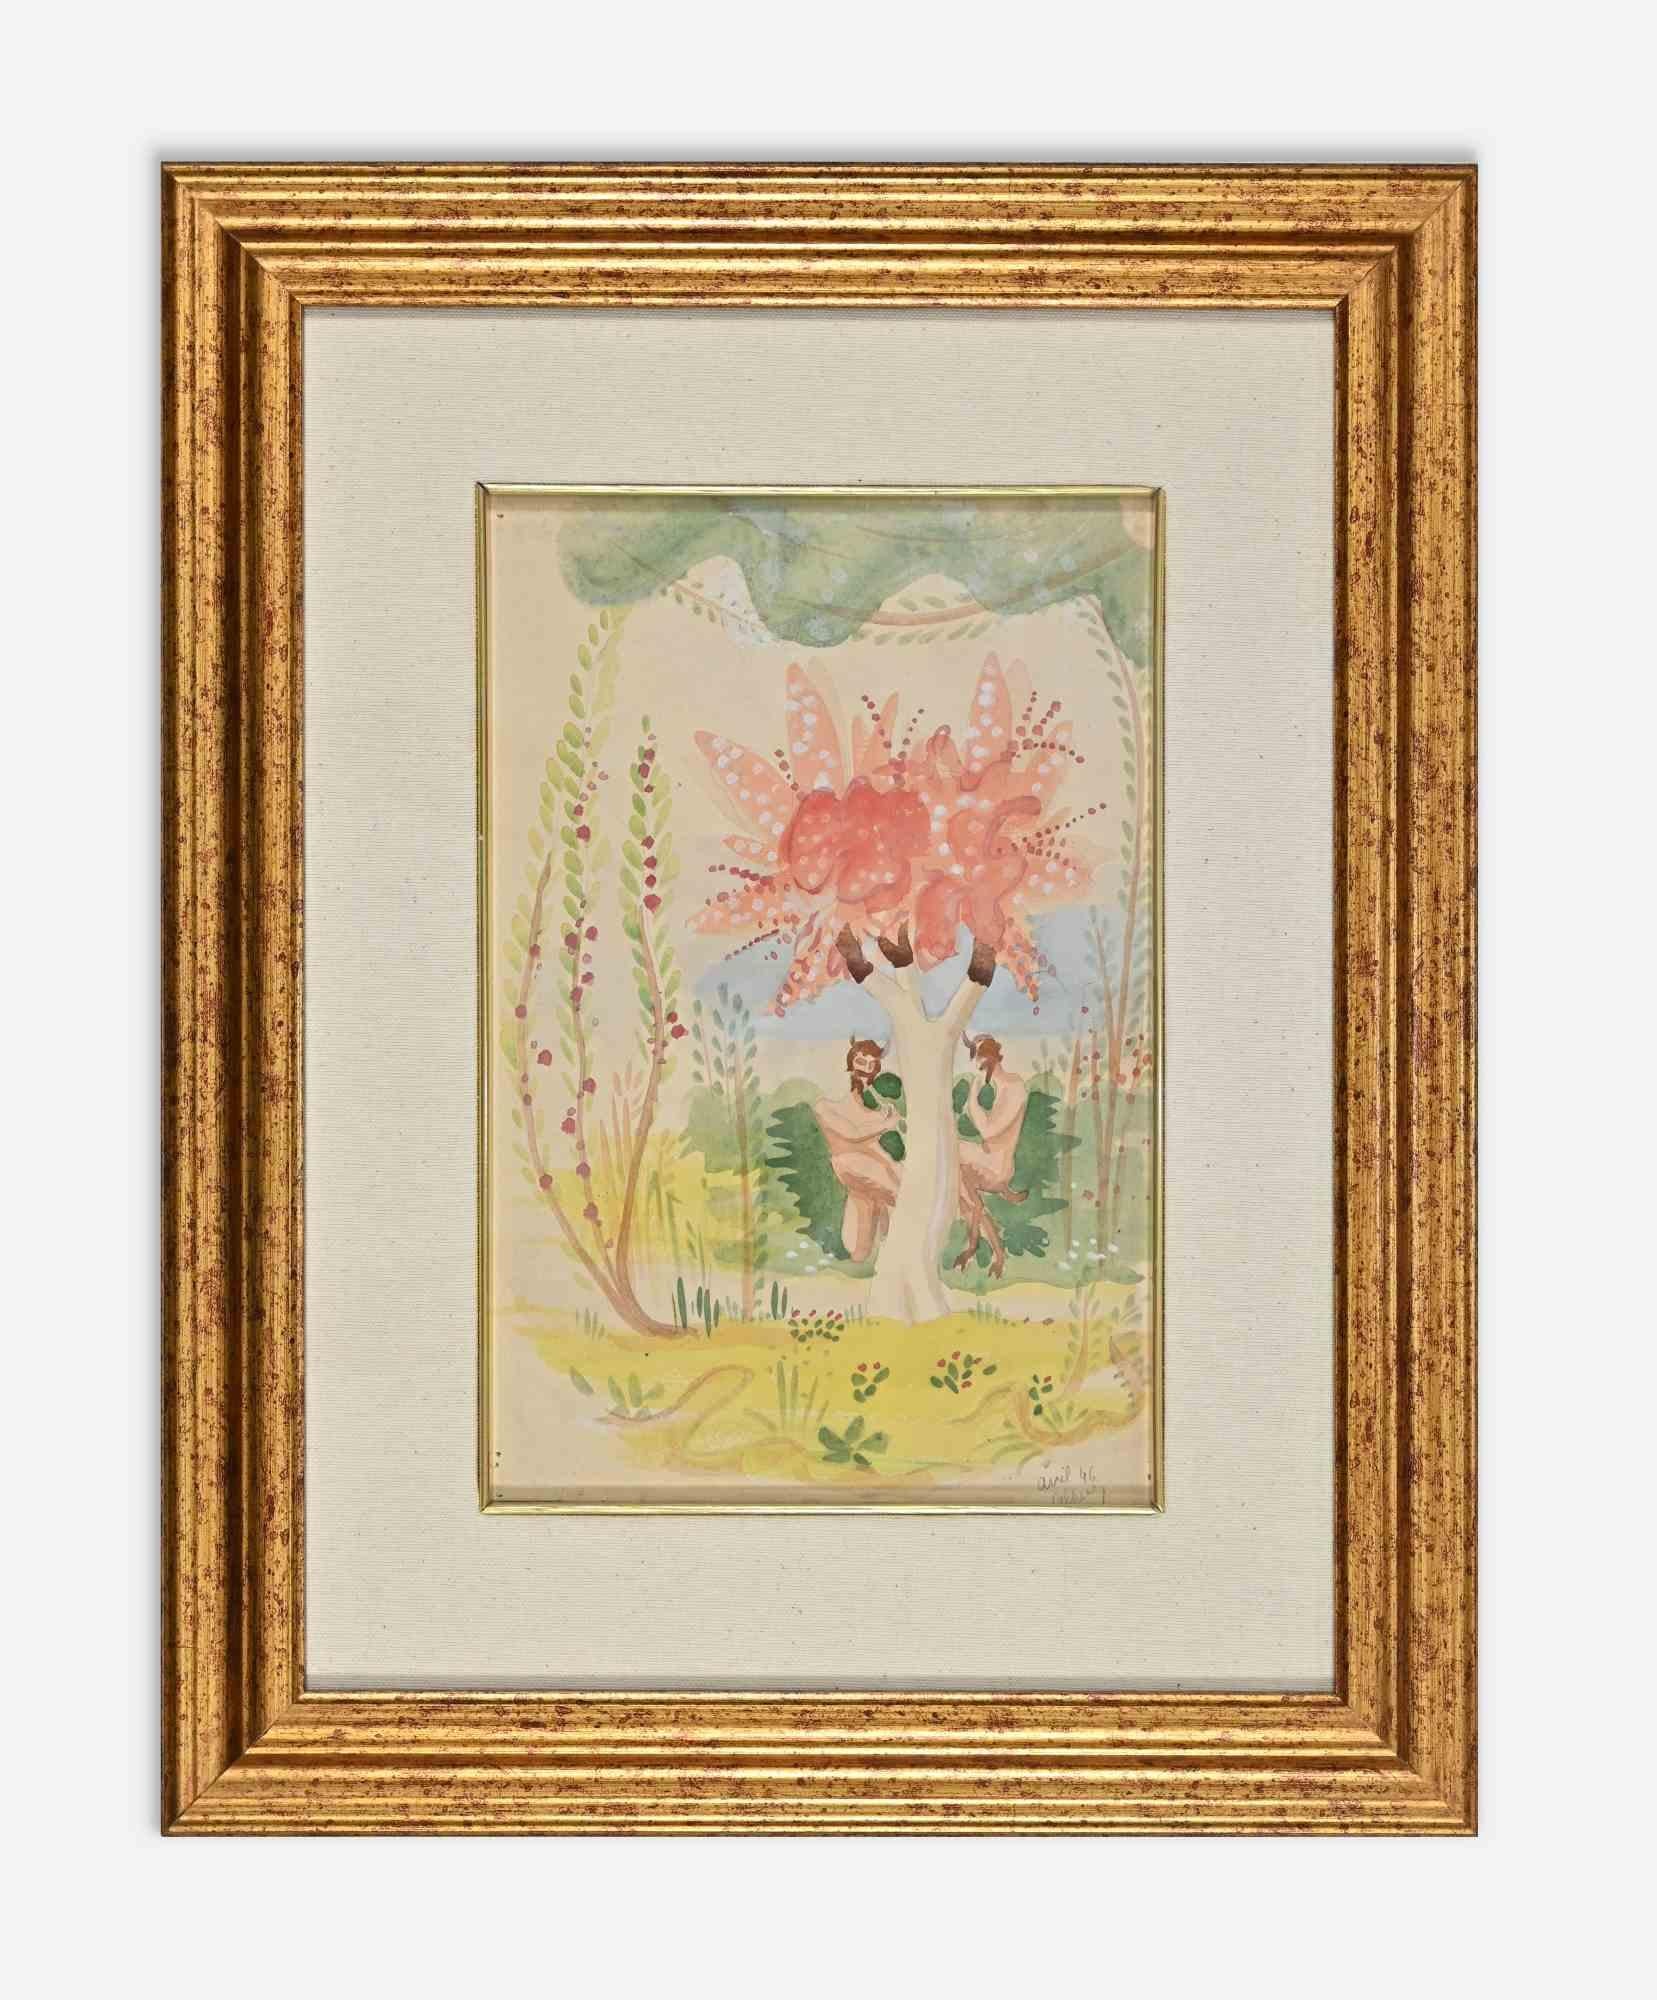 Bukolischer Garten ist eine Originalzeichnung in Aquarell auf Papier, die Jean Delpech (1916-1988) 1946 anfertigte.

Handsigniert und datiert am unteren rechten Rand.

Inklusive Rahmen: 50 x 39,5 cm

Jean-Raymond Delpech (1988-1916) ist ein